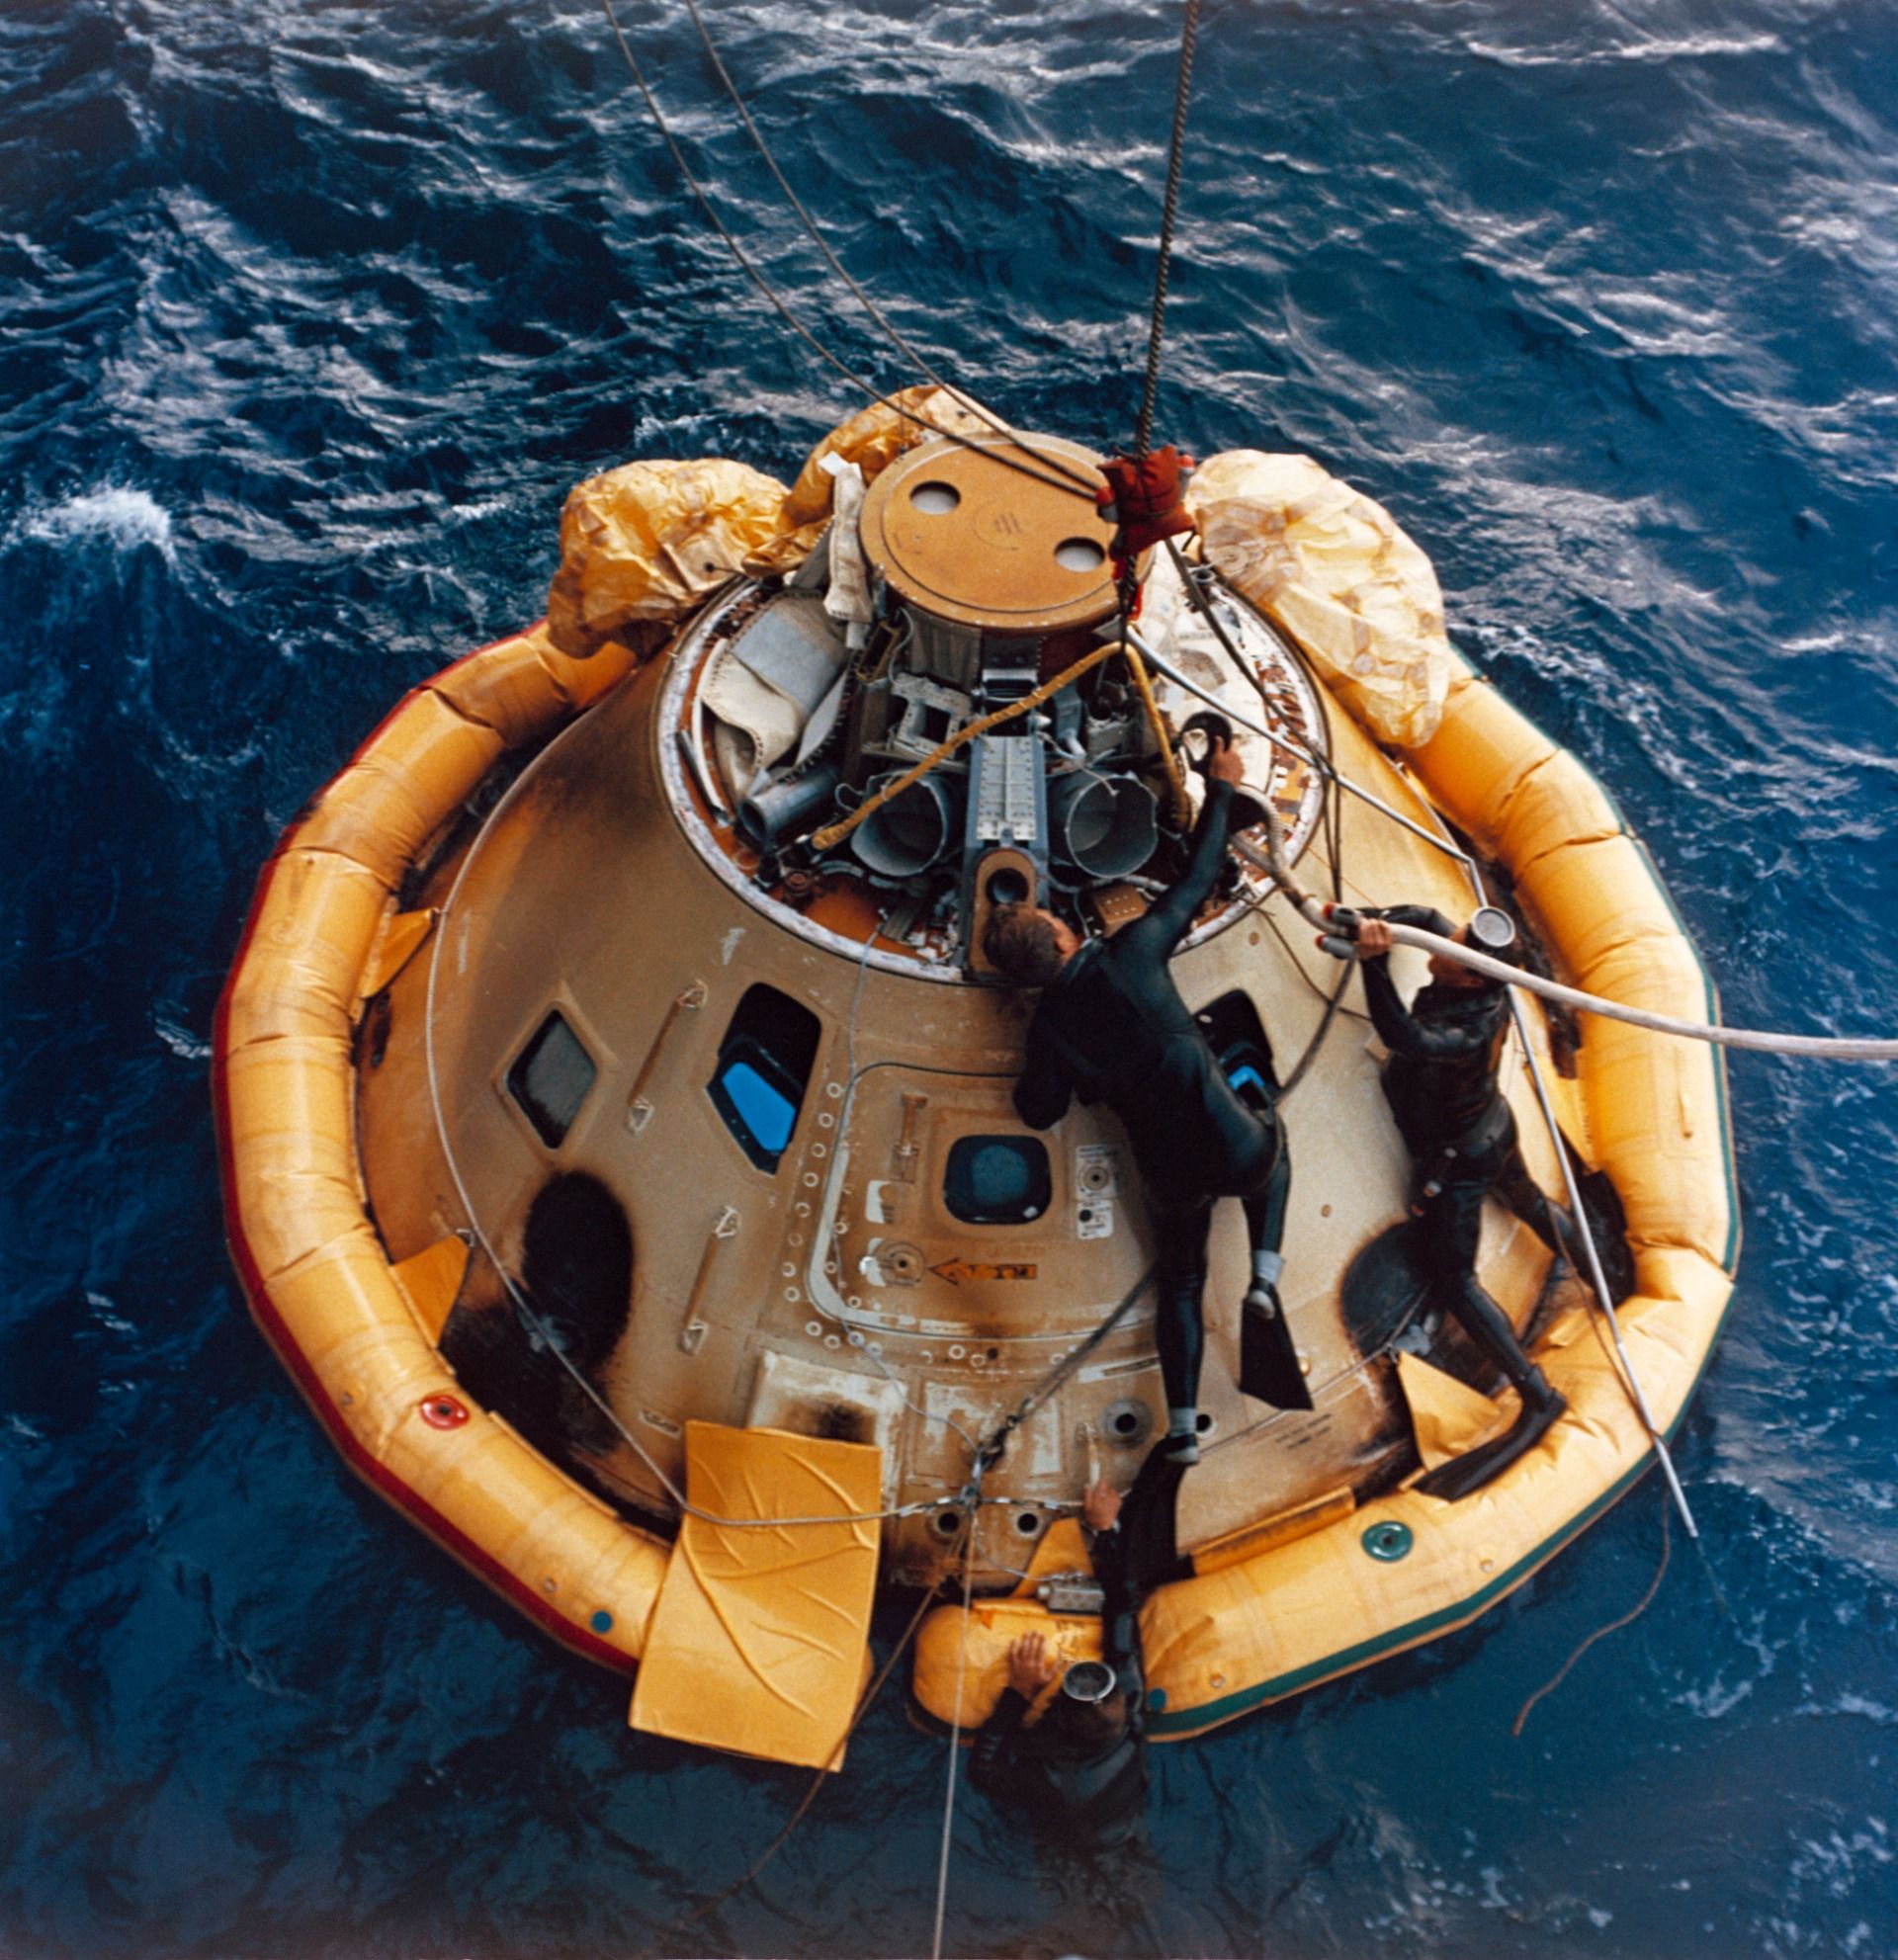 Apollo 6 splashdown